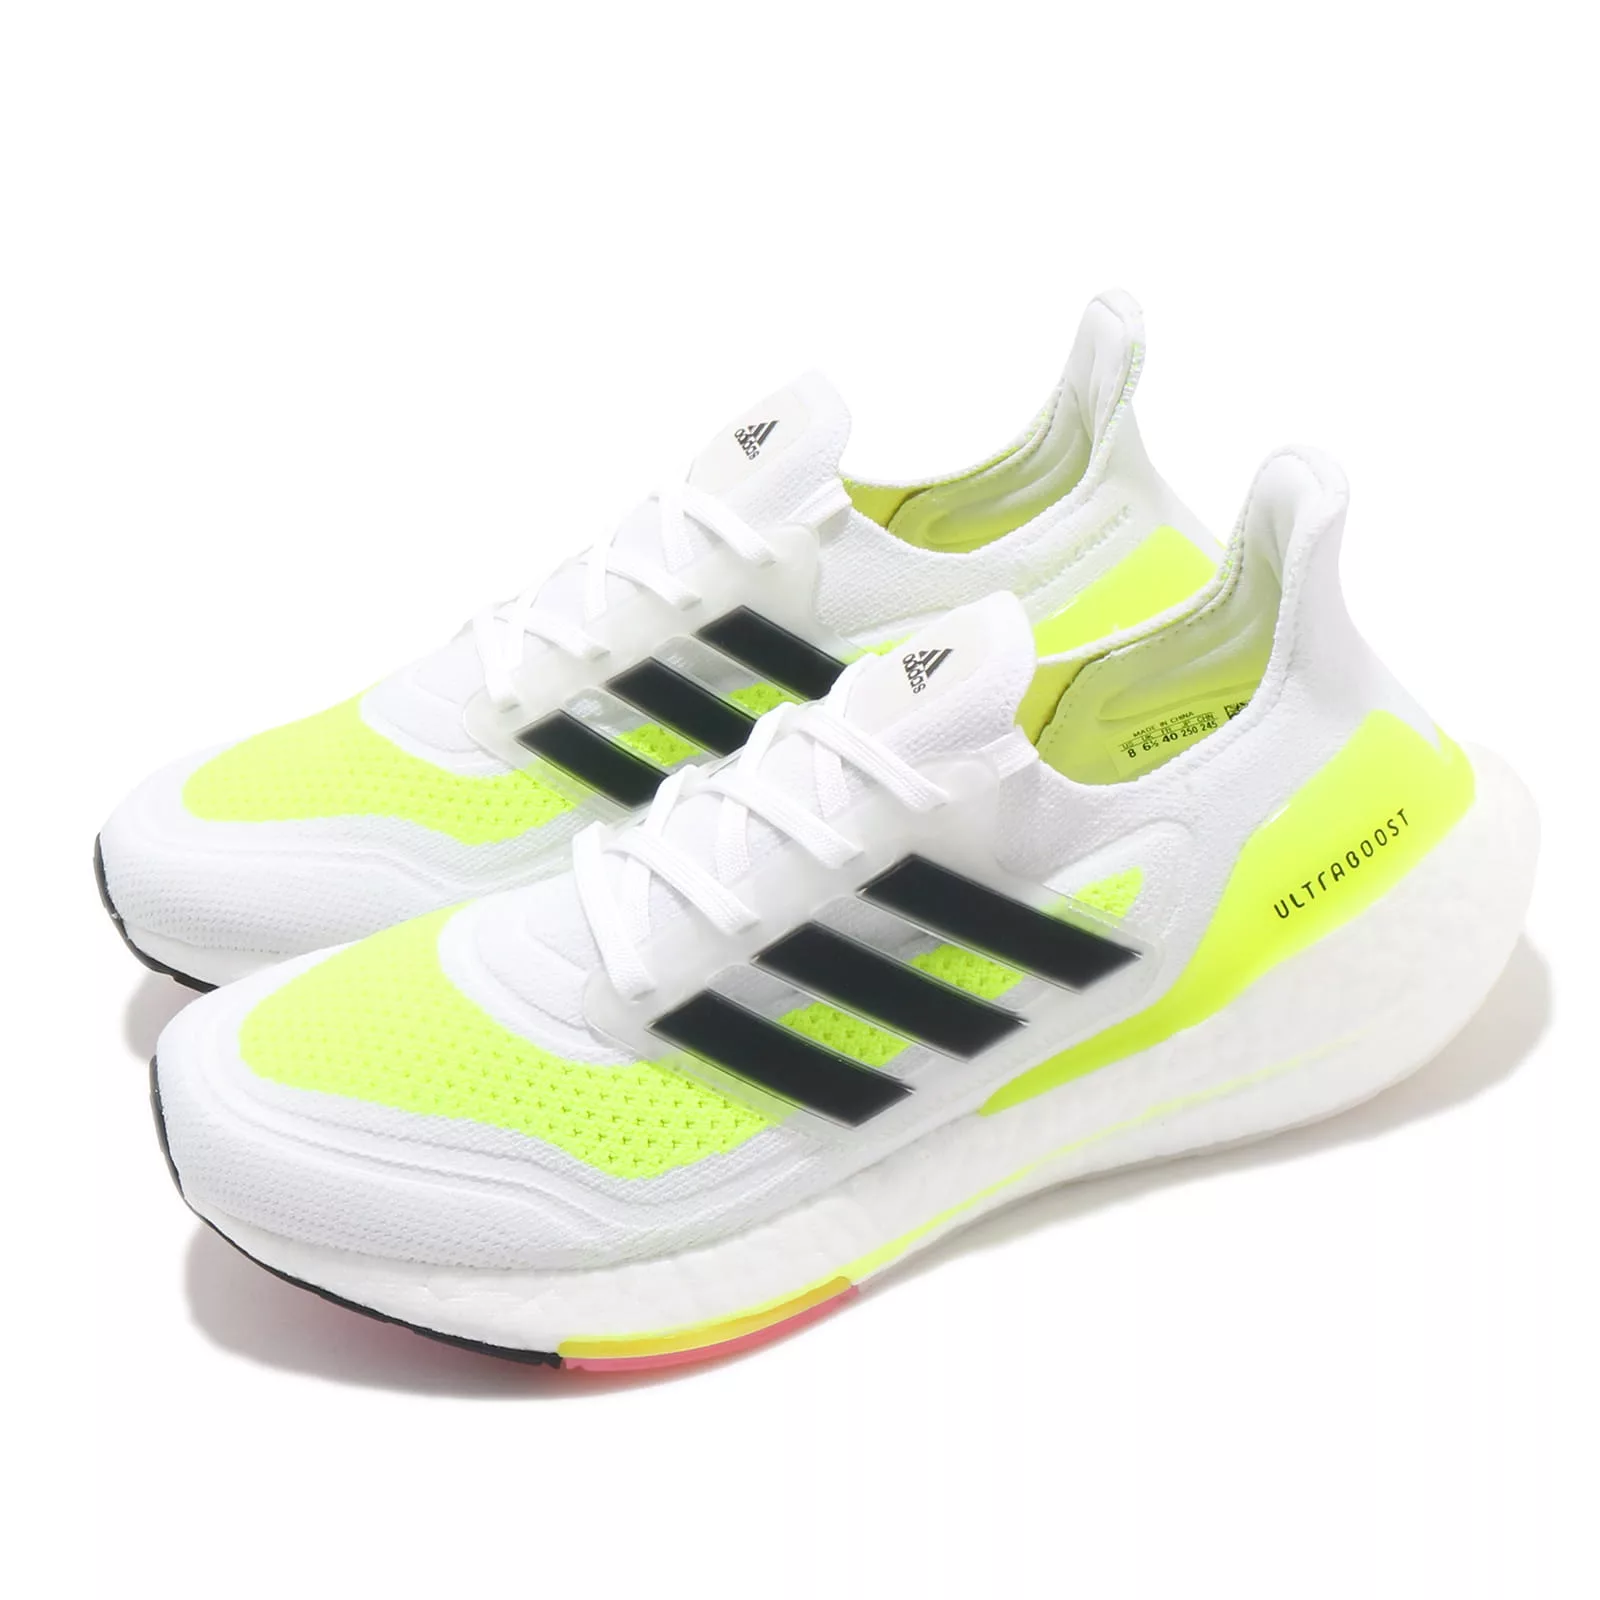 adidas 慢跑鞋 Ultraboost 21 運動 女鞋 愛迪達 輕量 透氣 舒適 避震 路跑 白 黃 FY0401 23cm WHITE/YELLOW